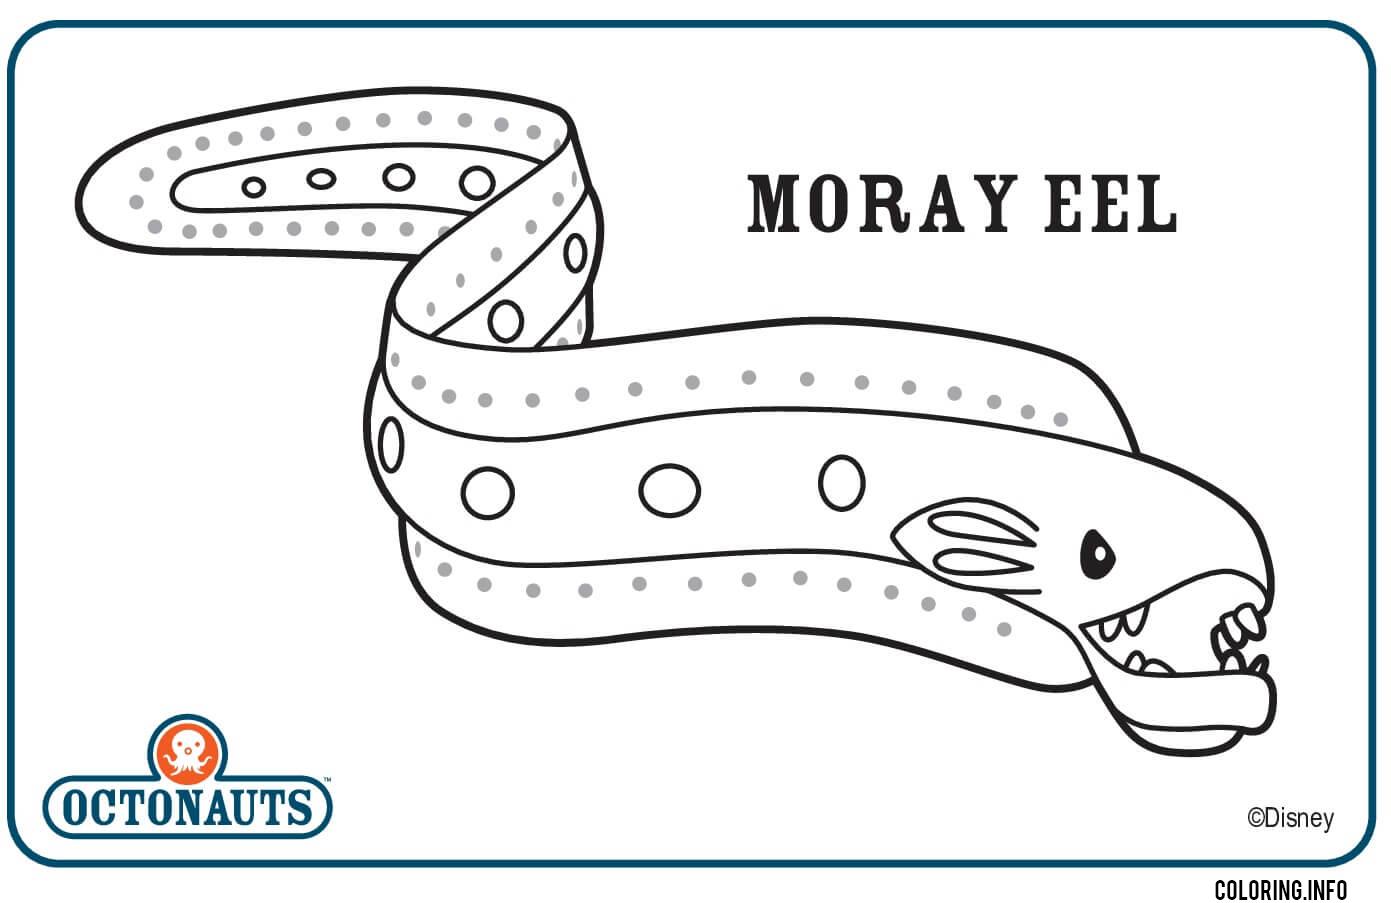 Moray Eel Octonaut Creature coloring